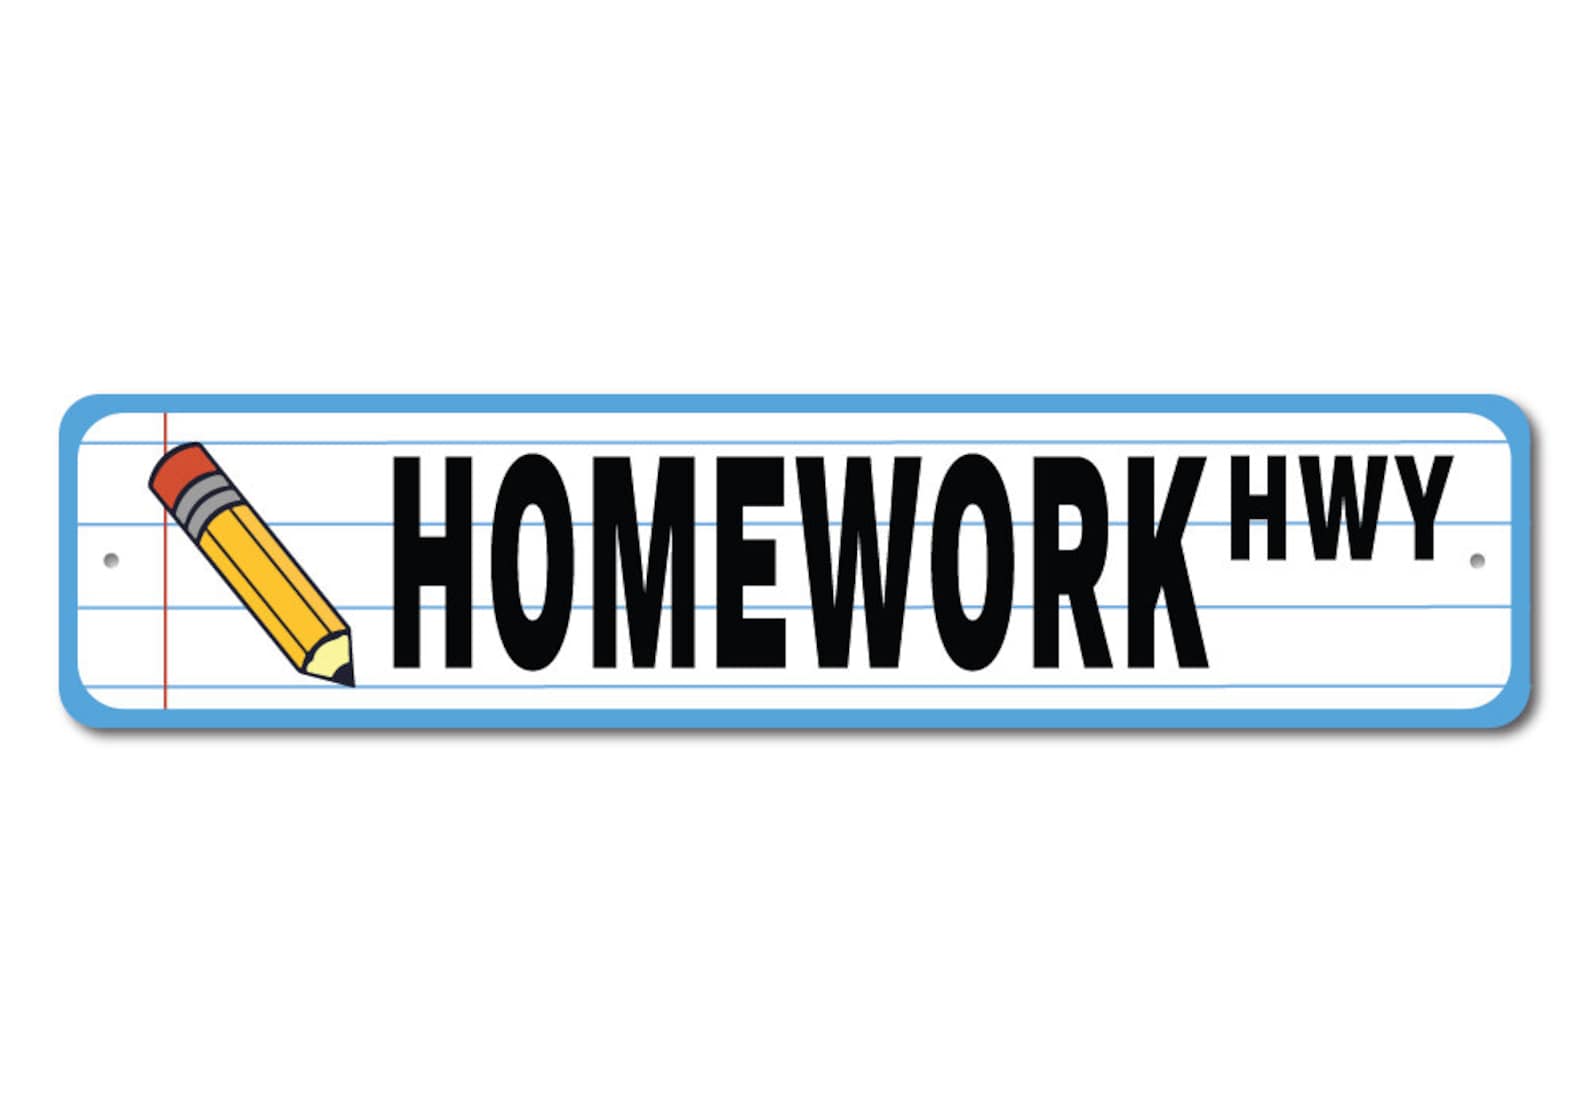 homework sign images